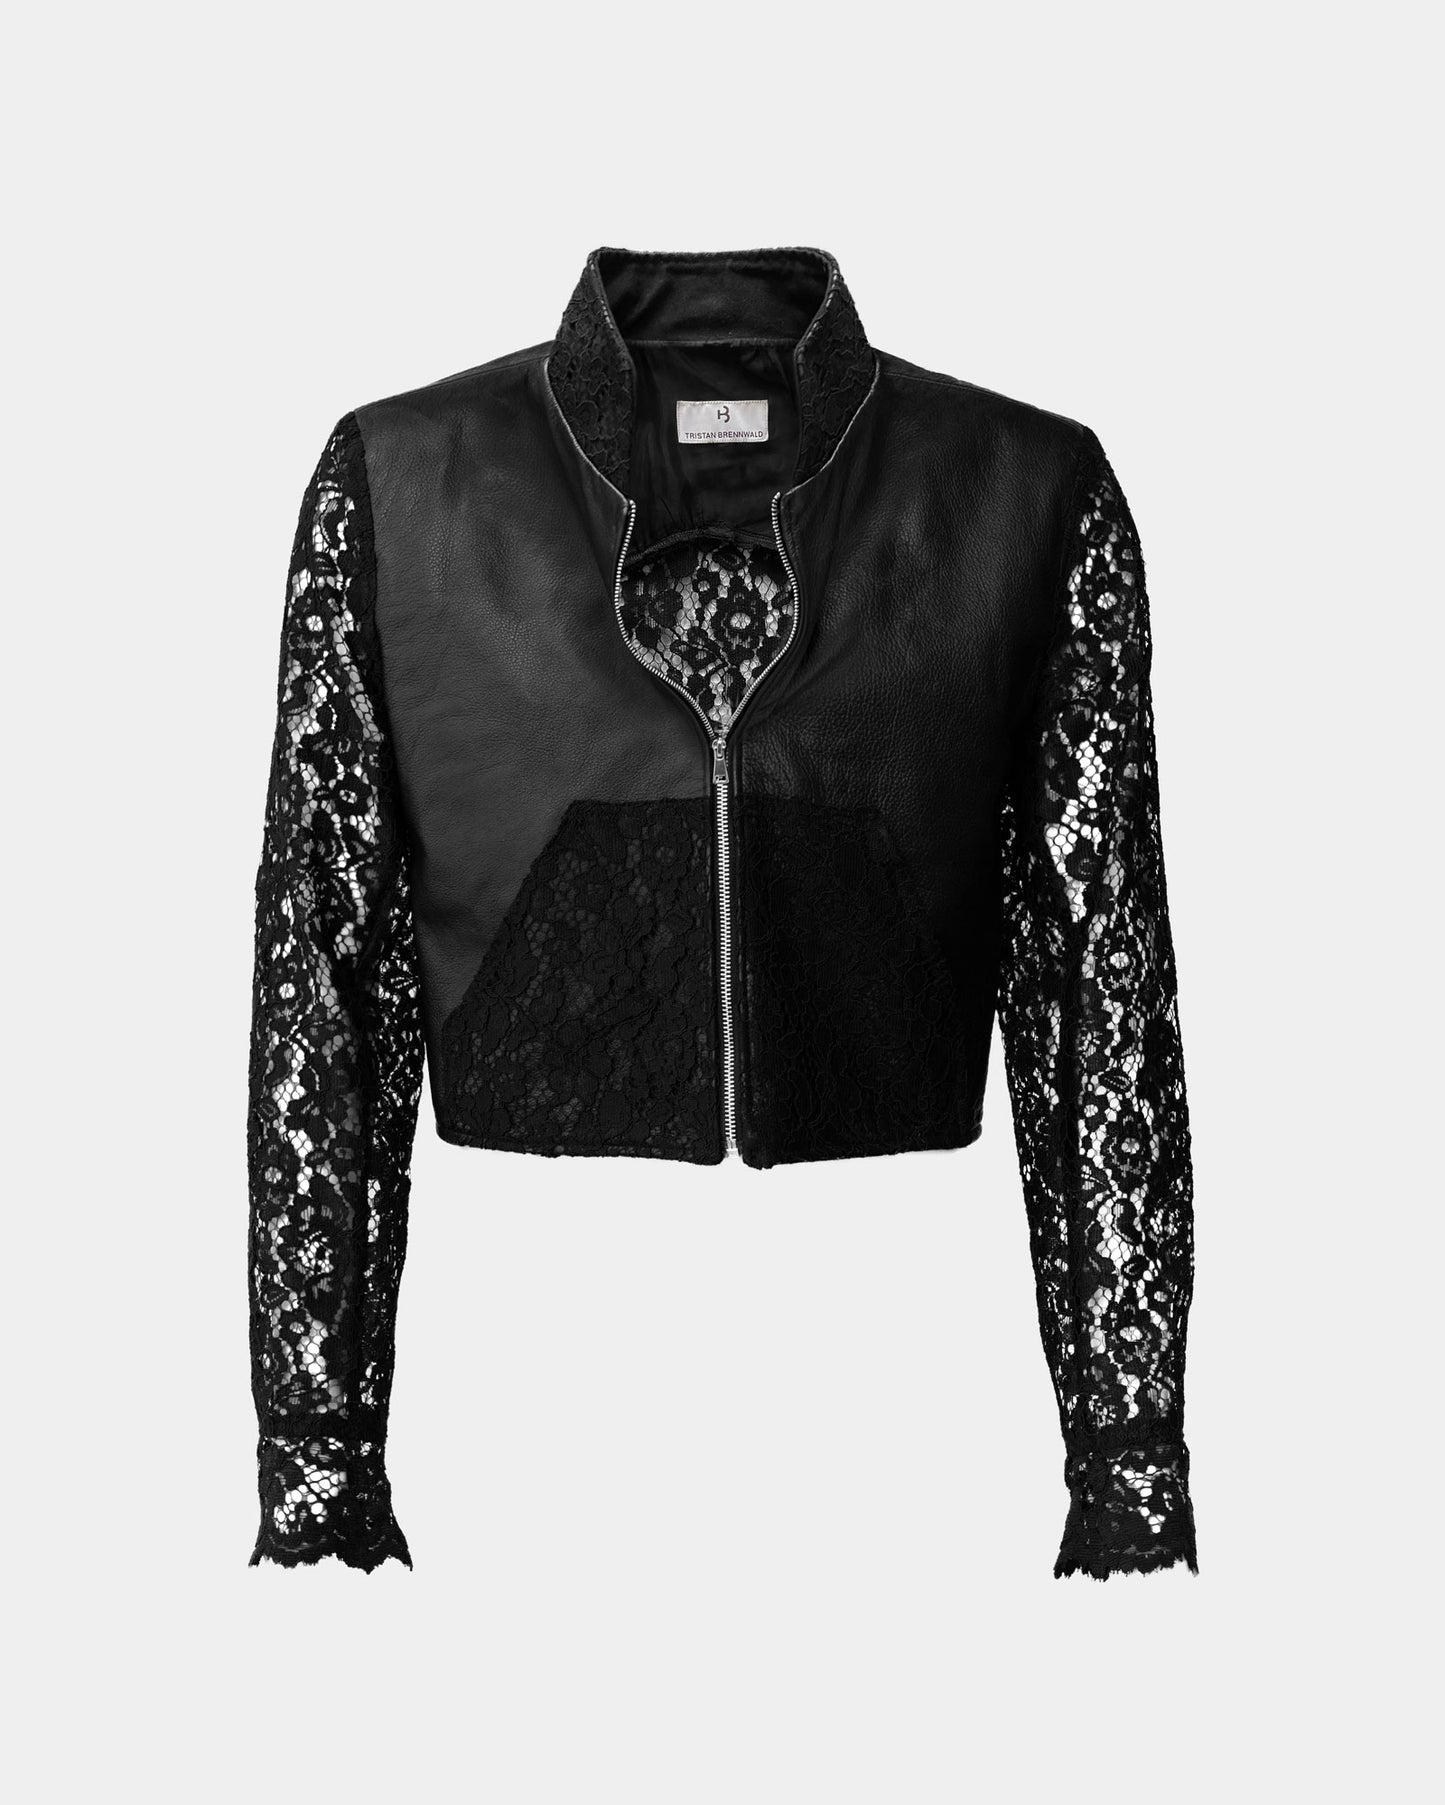 Lace&Leather Jacket